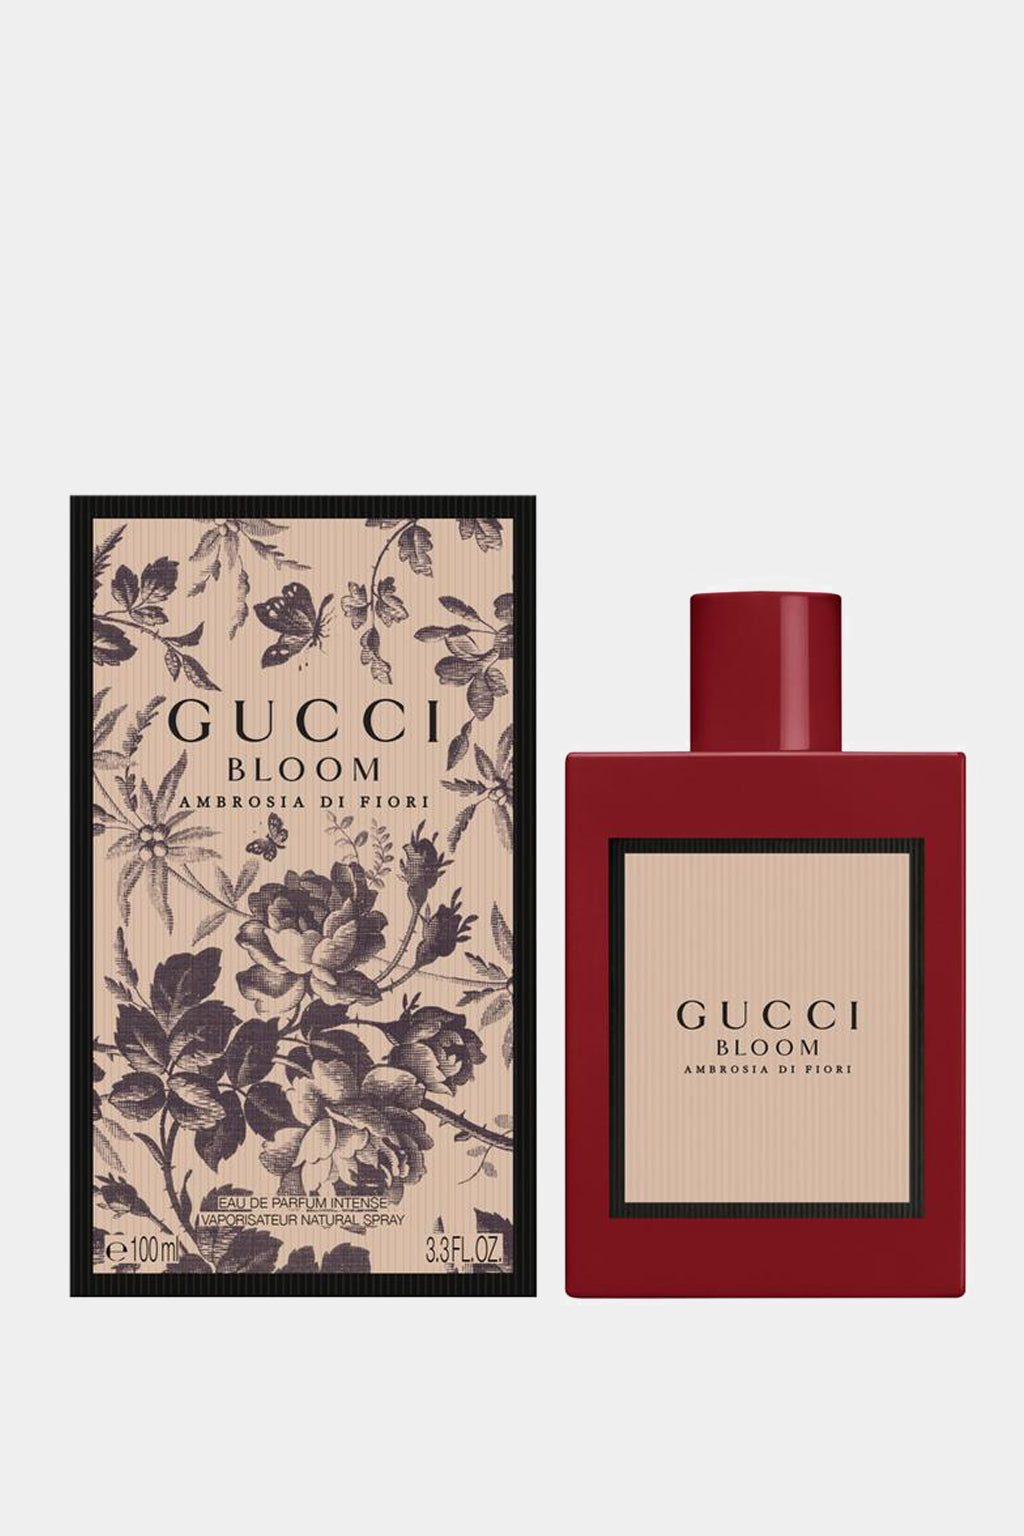 Gucci - Bloom Ambrosia di Fiori Intense Eau de Parfum